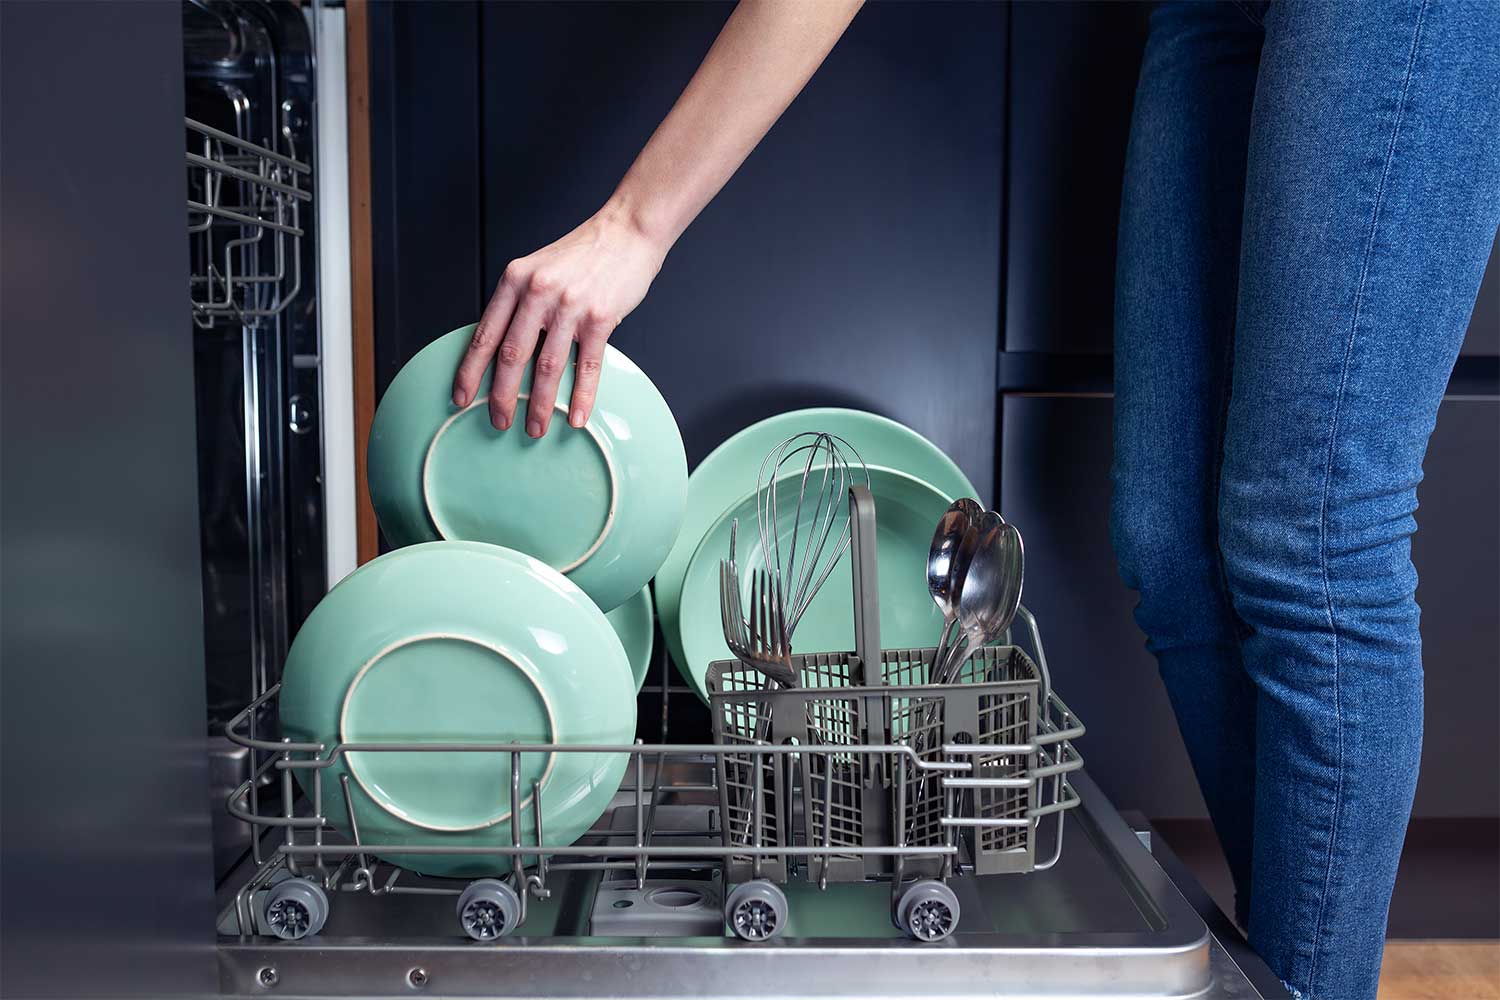 Что можно и нельзя мыть в посудомоечной машине: советы zoom